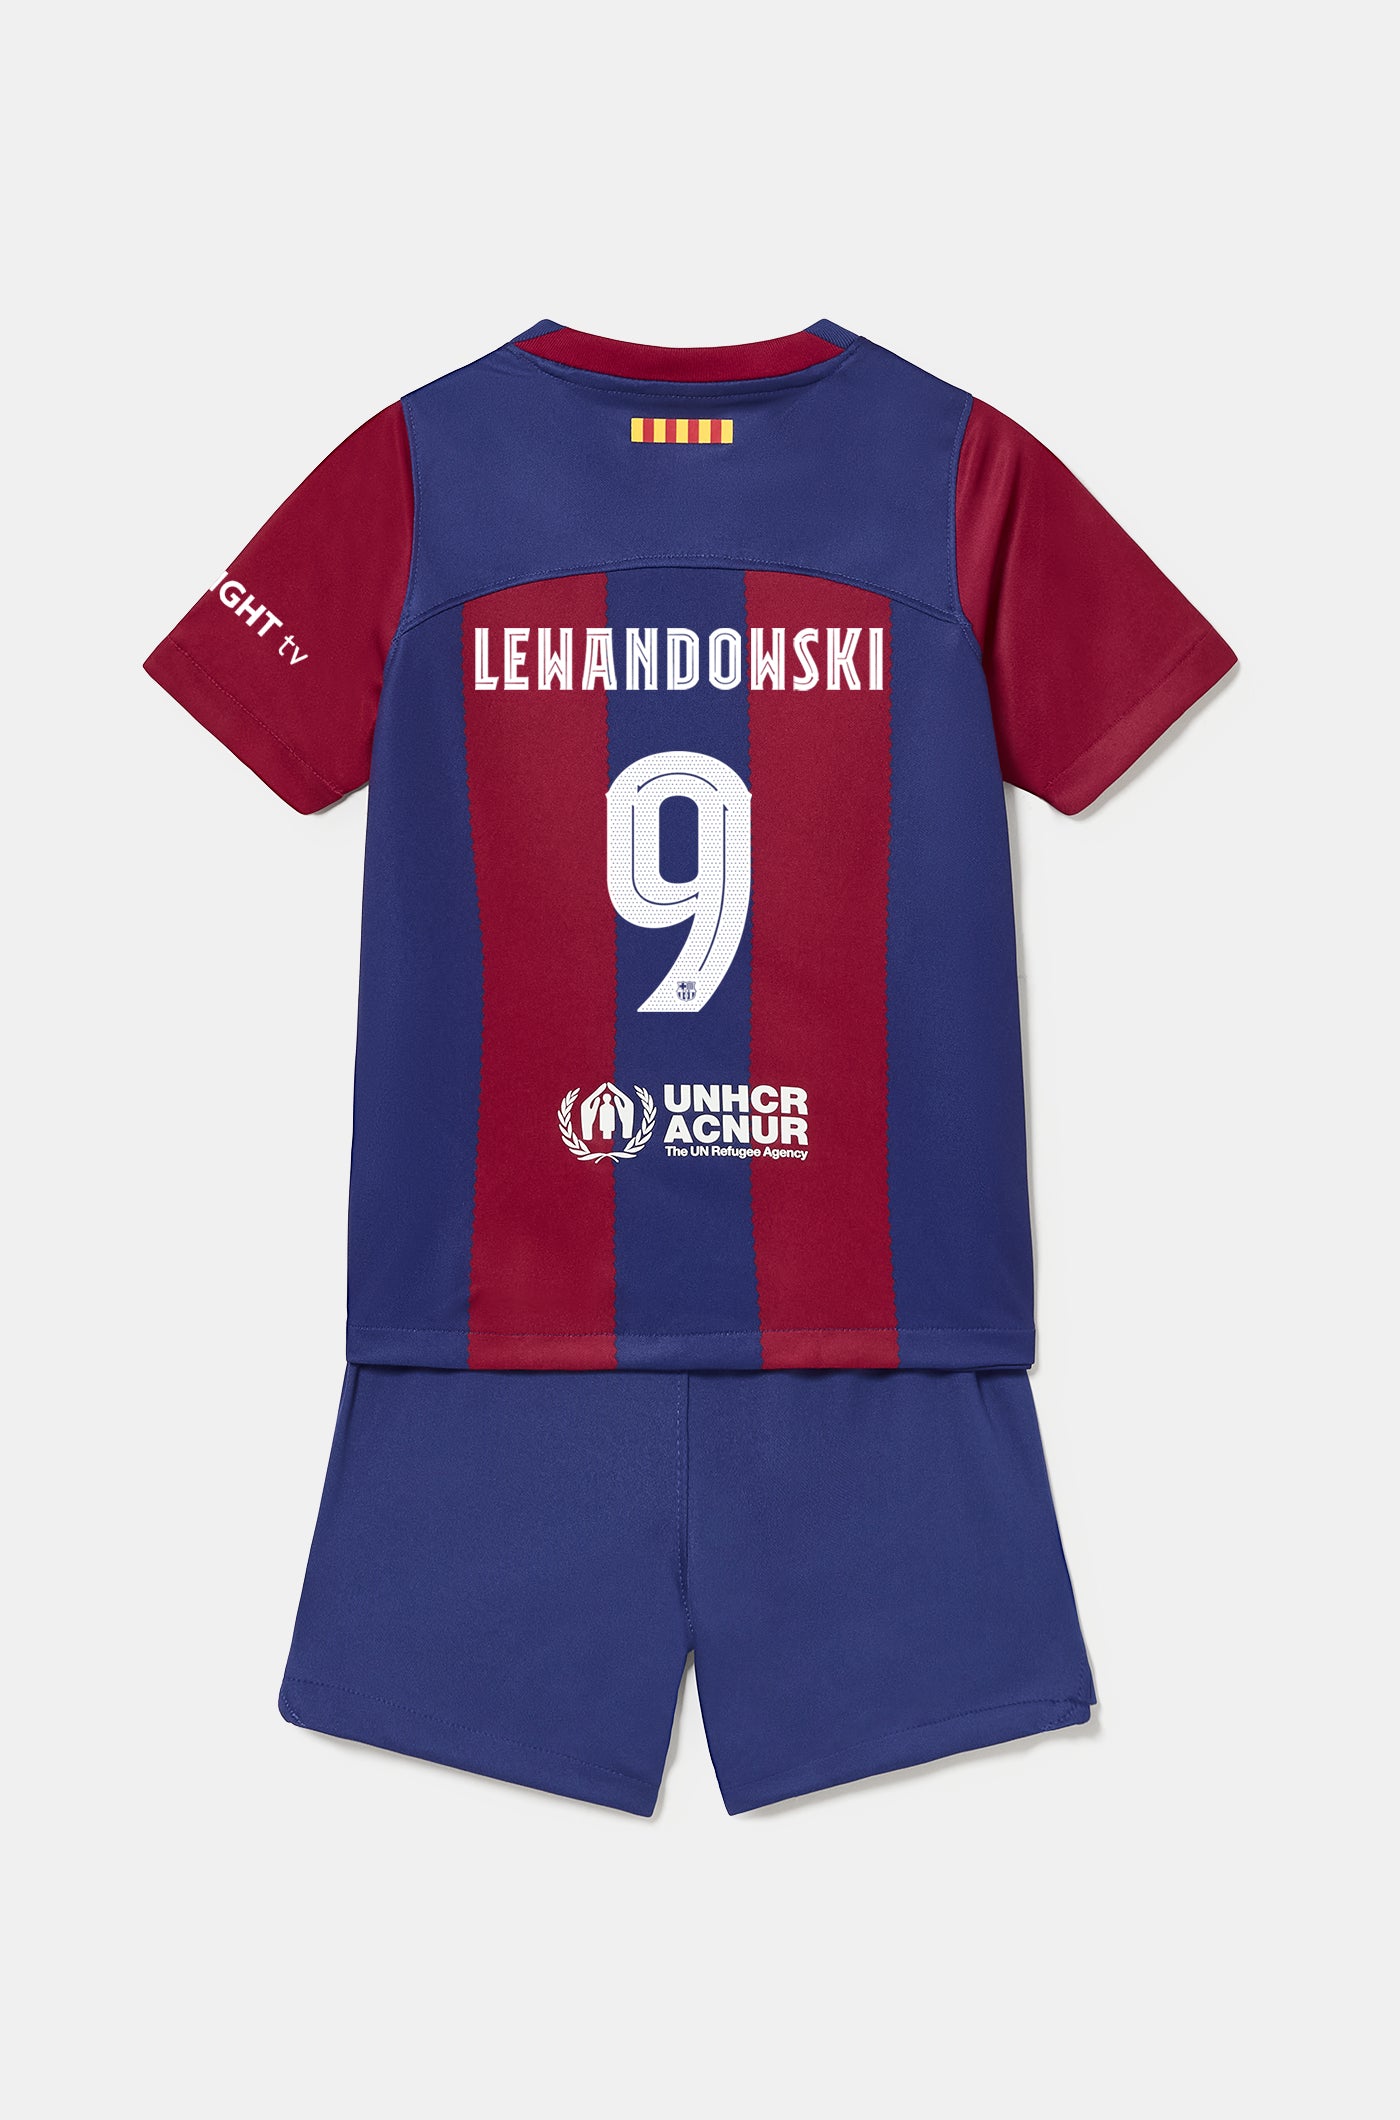 Conjunt primer equipament FC Barcelona 23/24 - Nen/a petit/a - LEWANDOWSKI